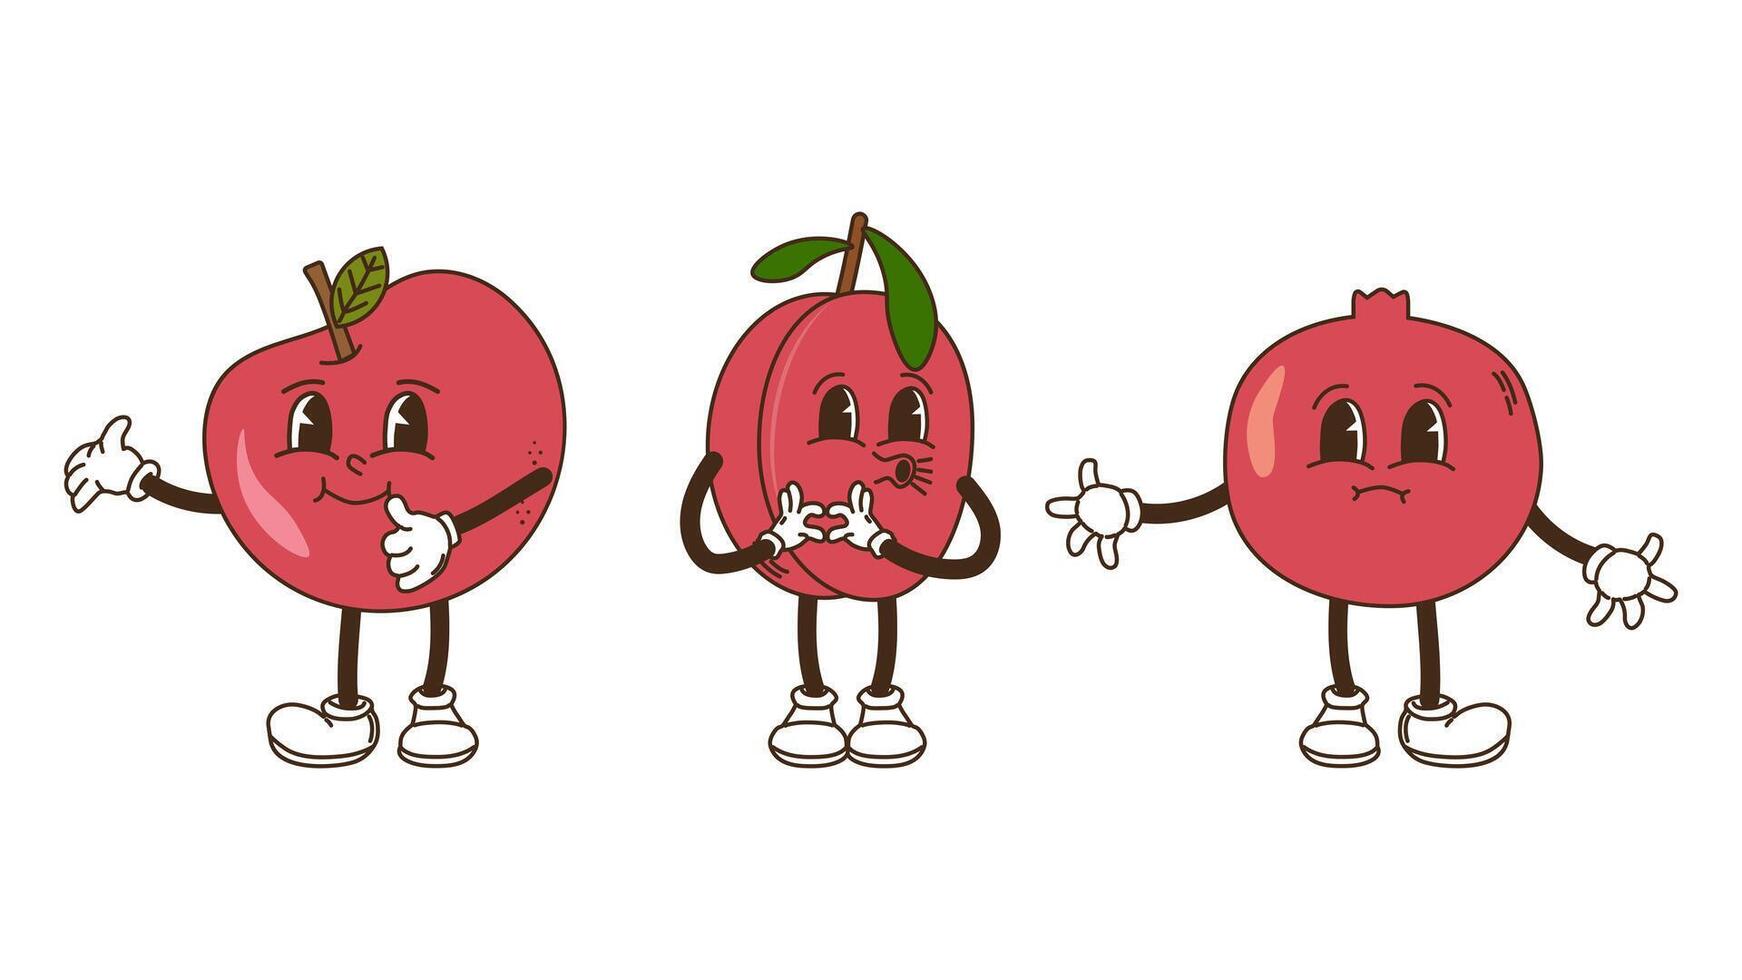 frukt och bär i häftig stil uppsättning. äpple plommon och granatäpple. tecken trendig retro, komisk maskot. design baner affisch. y2k hippie 70-talet, 80-tal. illustration. vektor